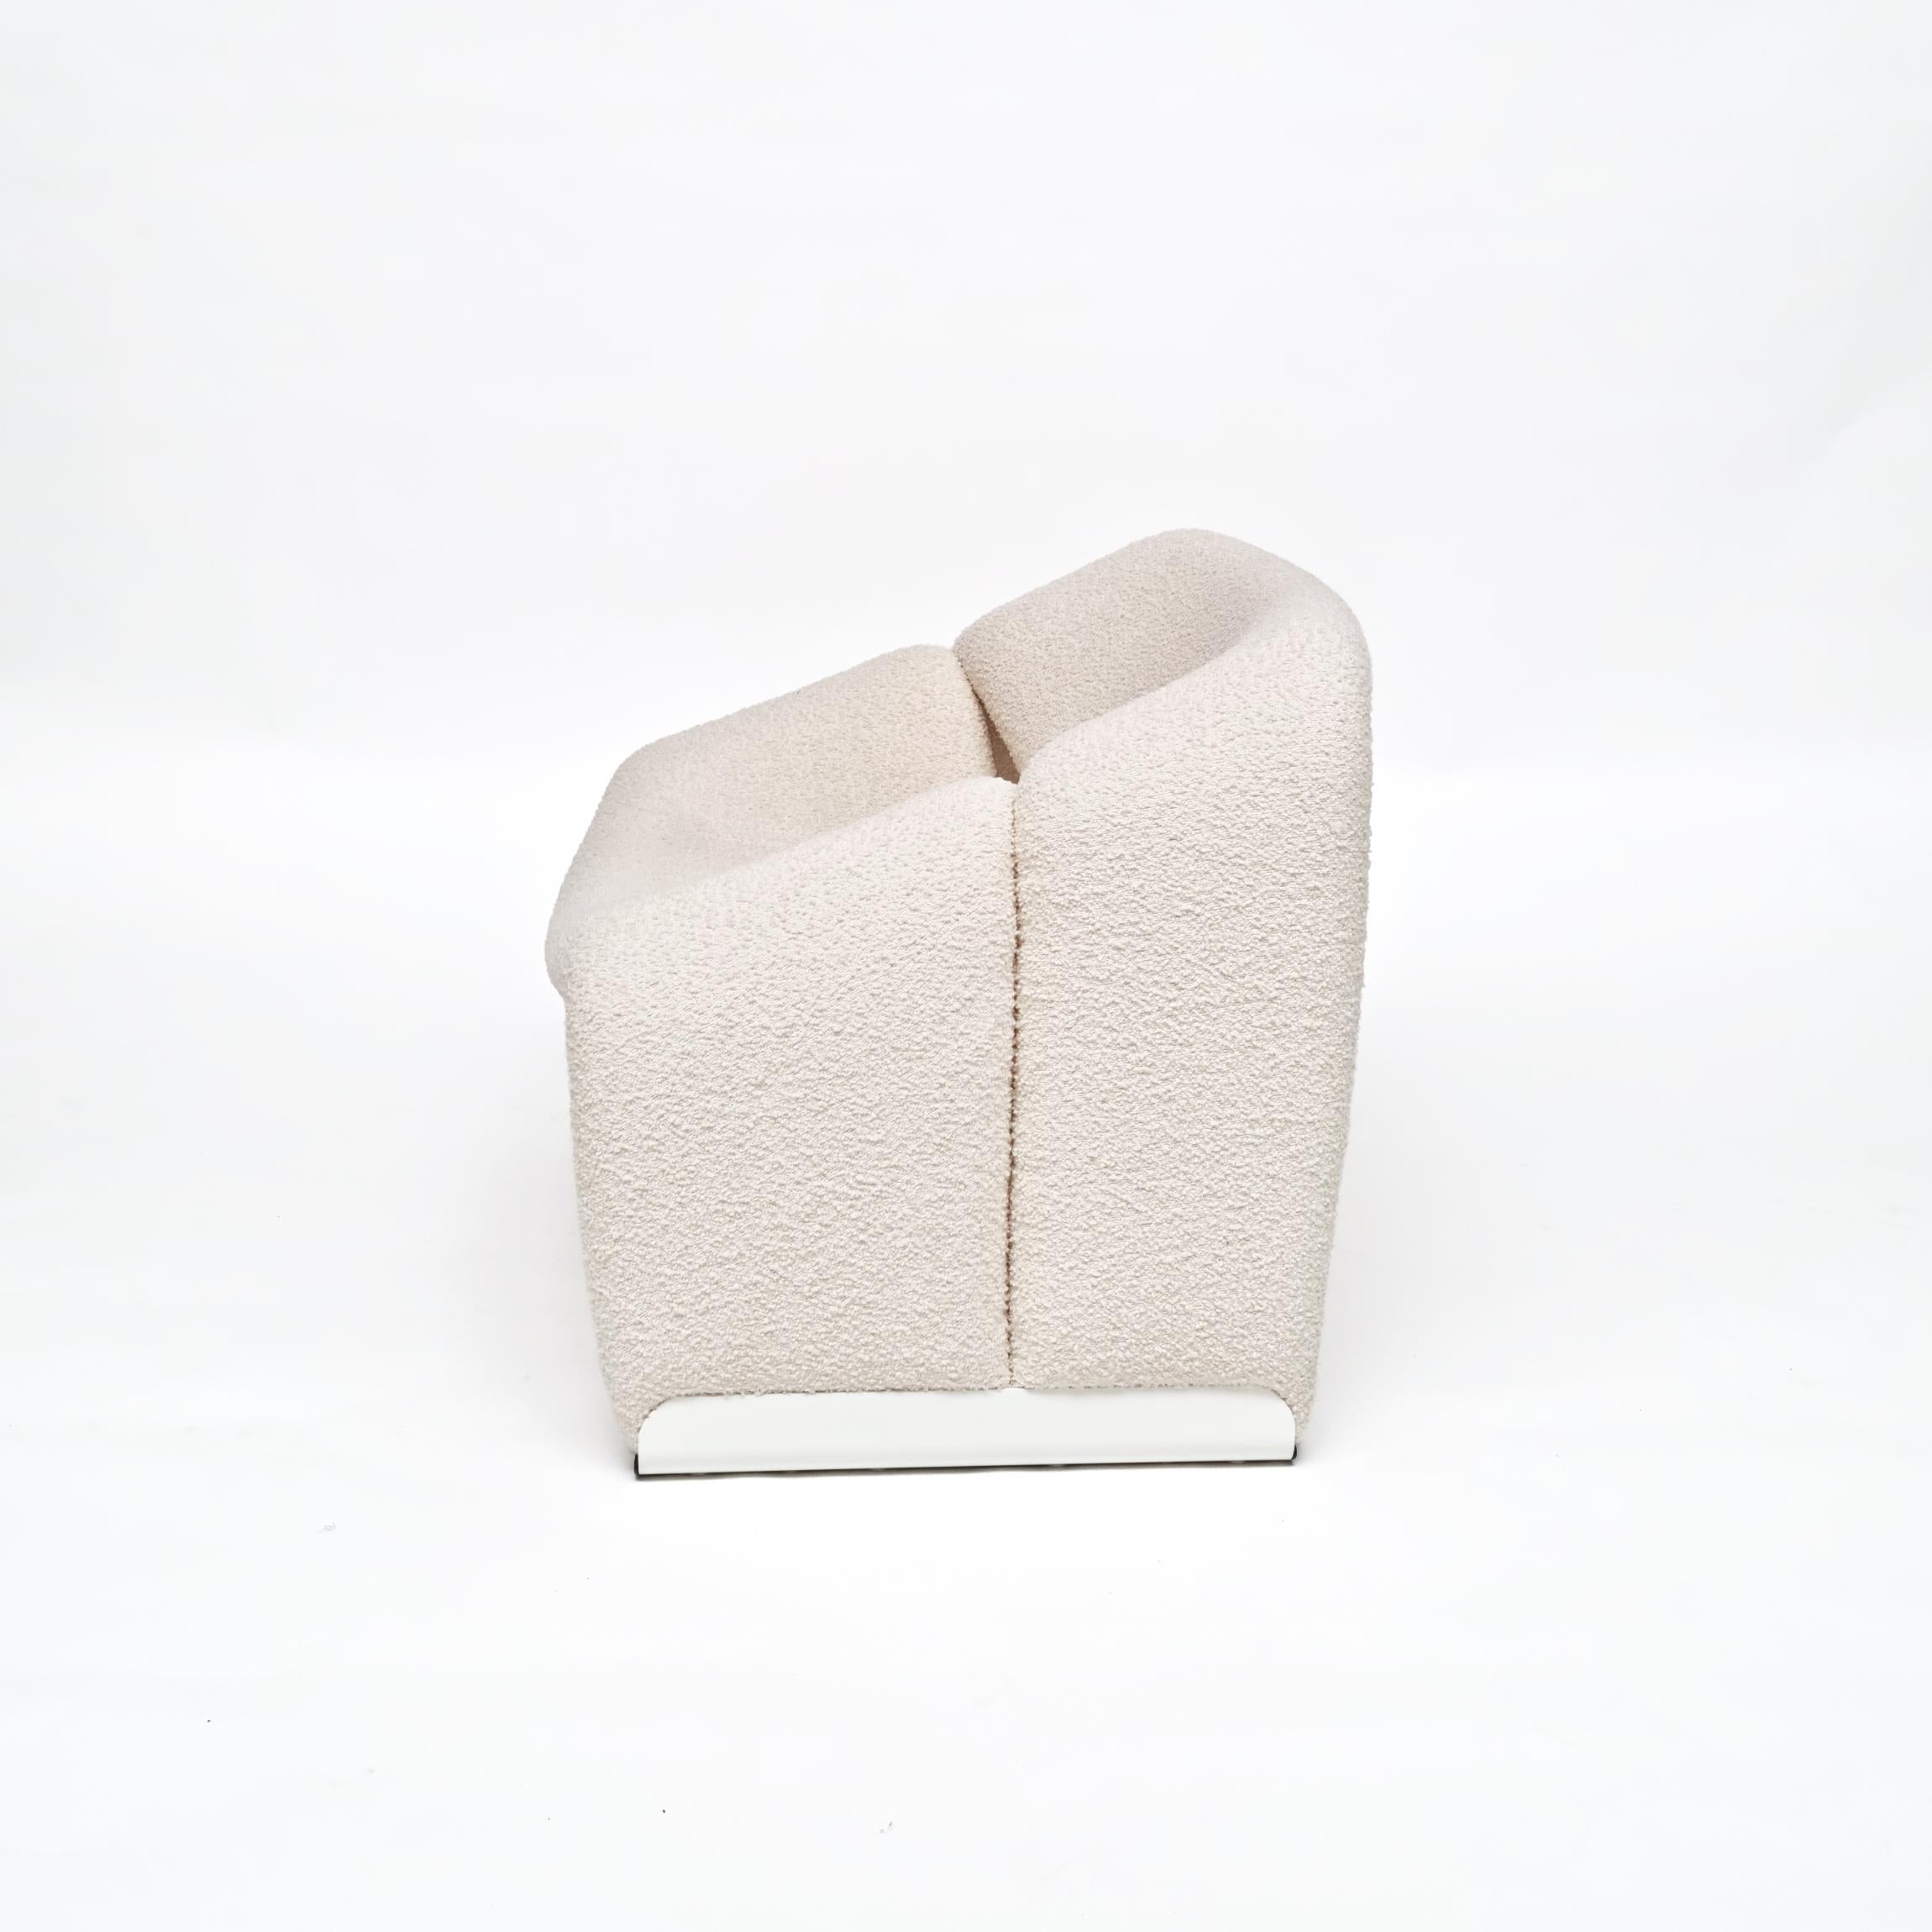 Pierre Paulin, le plus grand designer français, a conçu cette chaise chic pour Artifort, le créateur de meubles d'avant-garde hollandais. Son design compact, son confort exceptionnel et son apparence emblématique l'ont propulsé au rang de star de